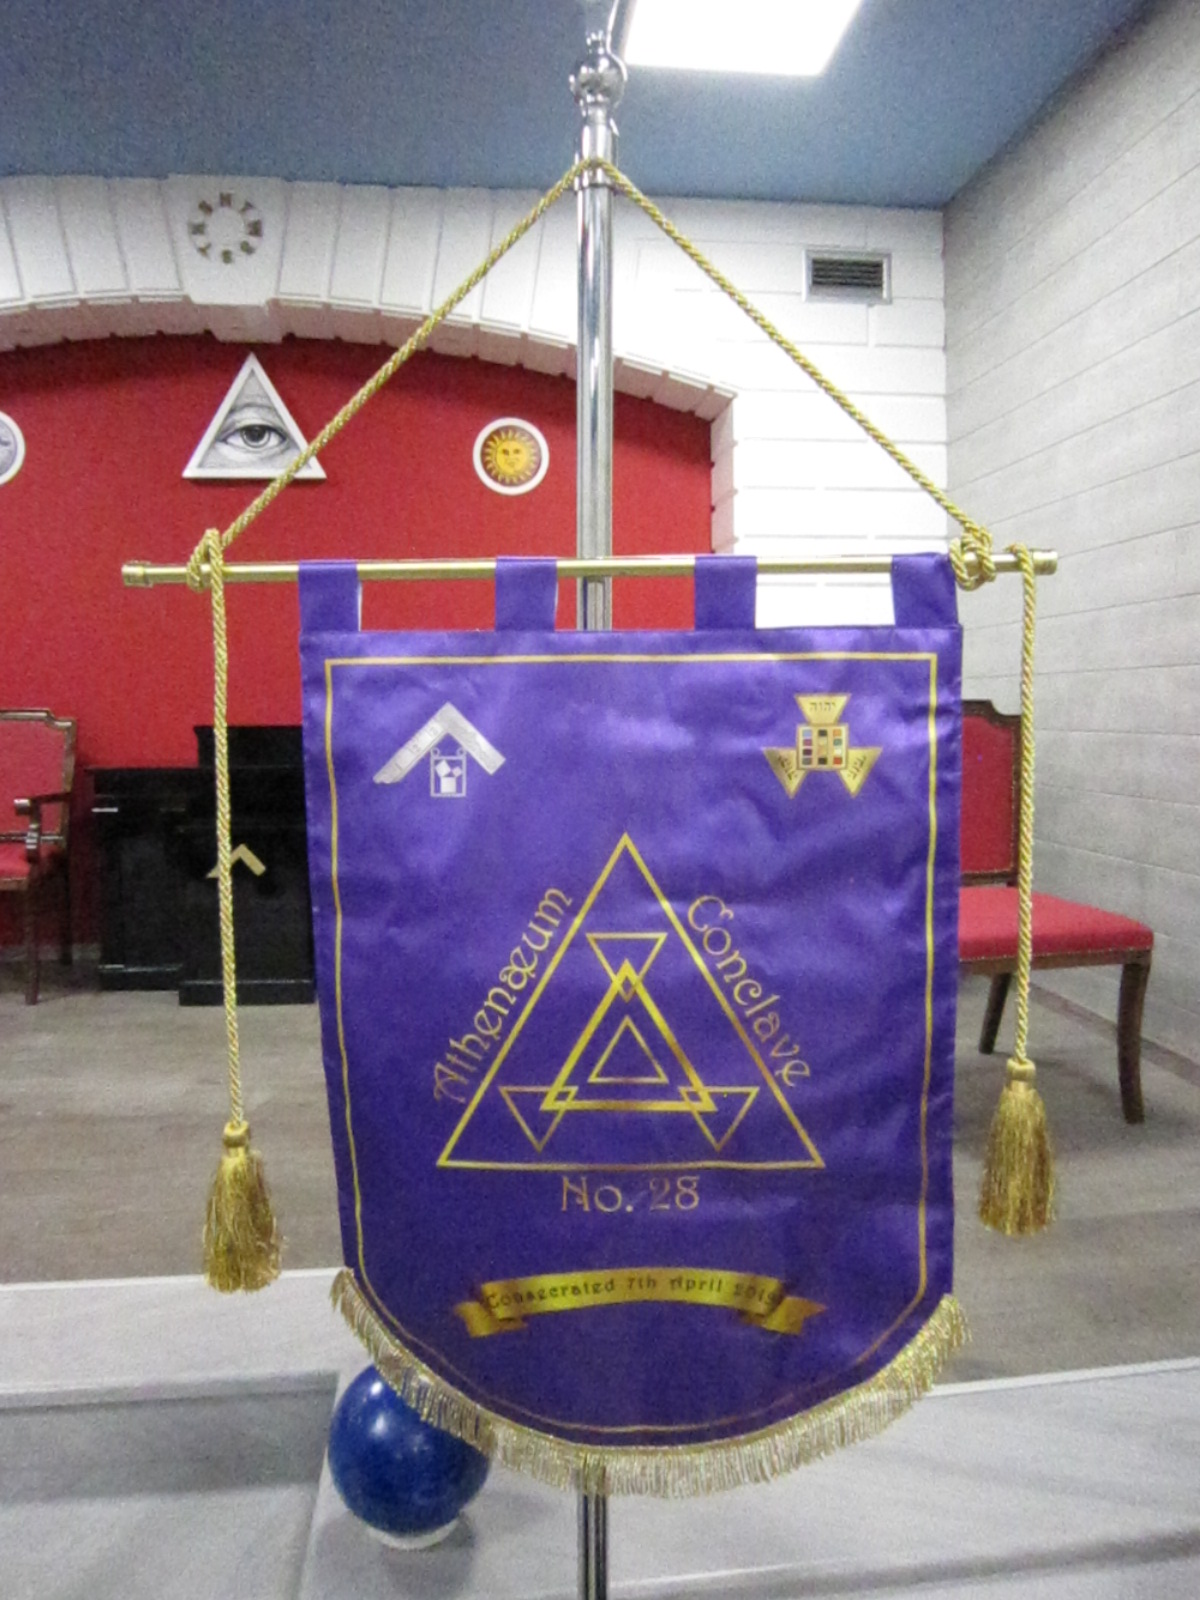 Pilgrim Preceptors - The Masonic Order of Pilgrim Preceptors